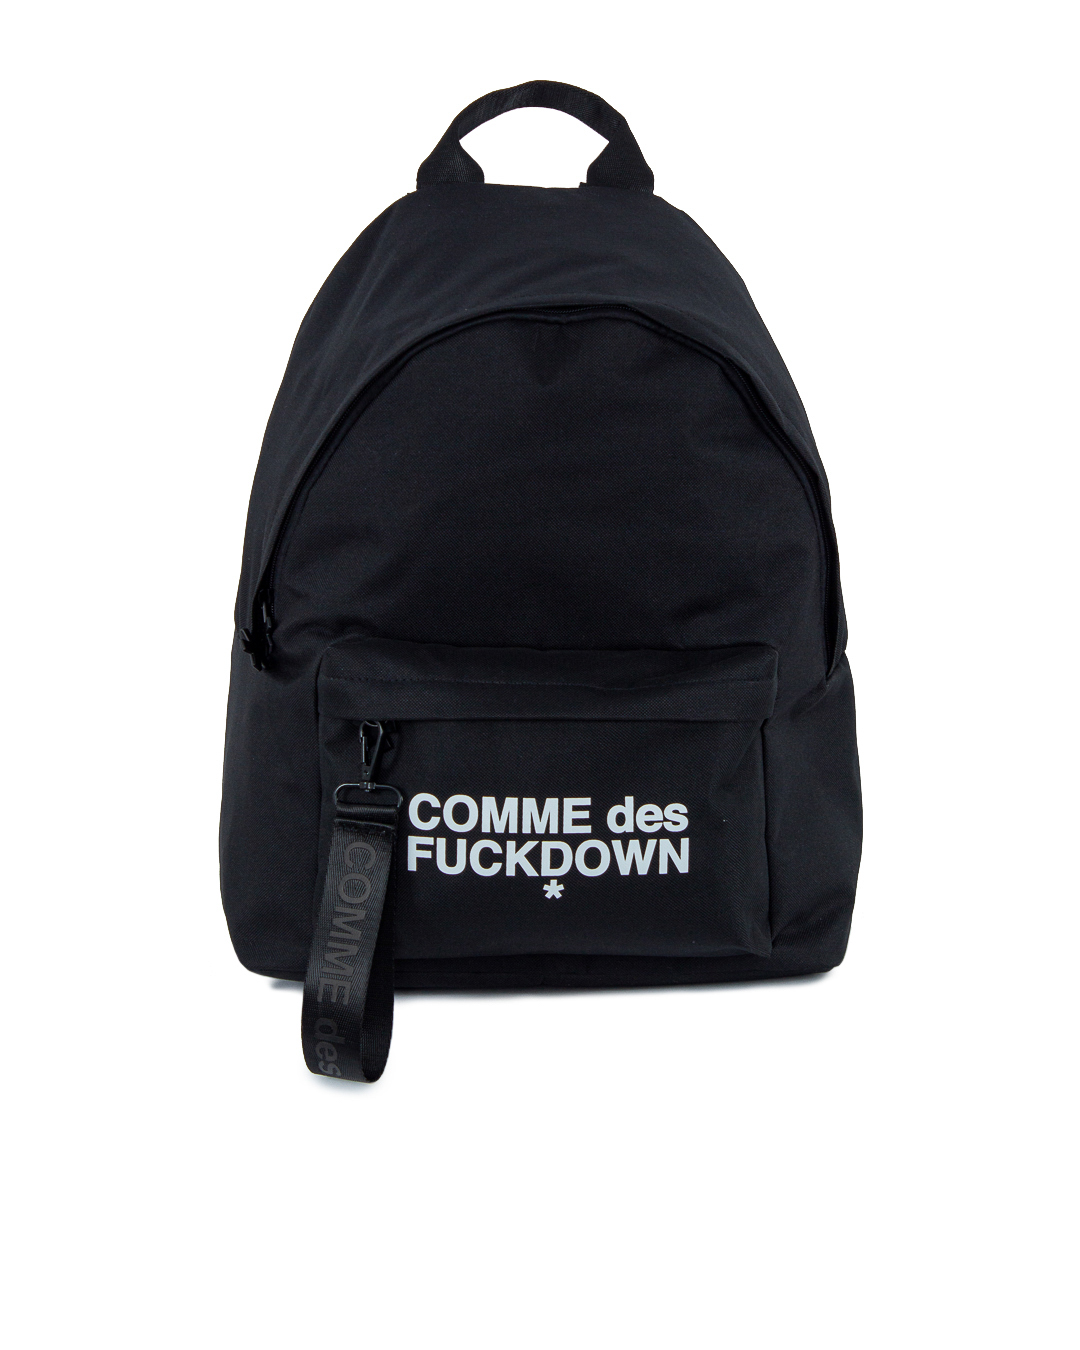 текстильный рюкзак COMME des FUCKDOWN brauberg рюкзак с отделением для ноутбука usb порт leader